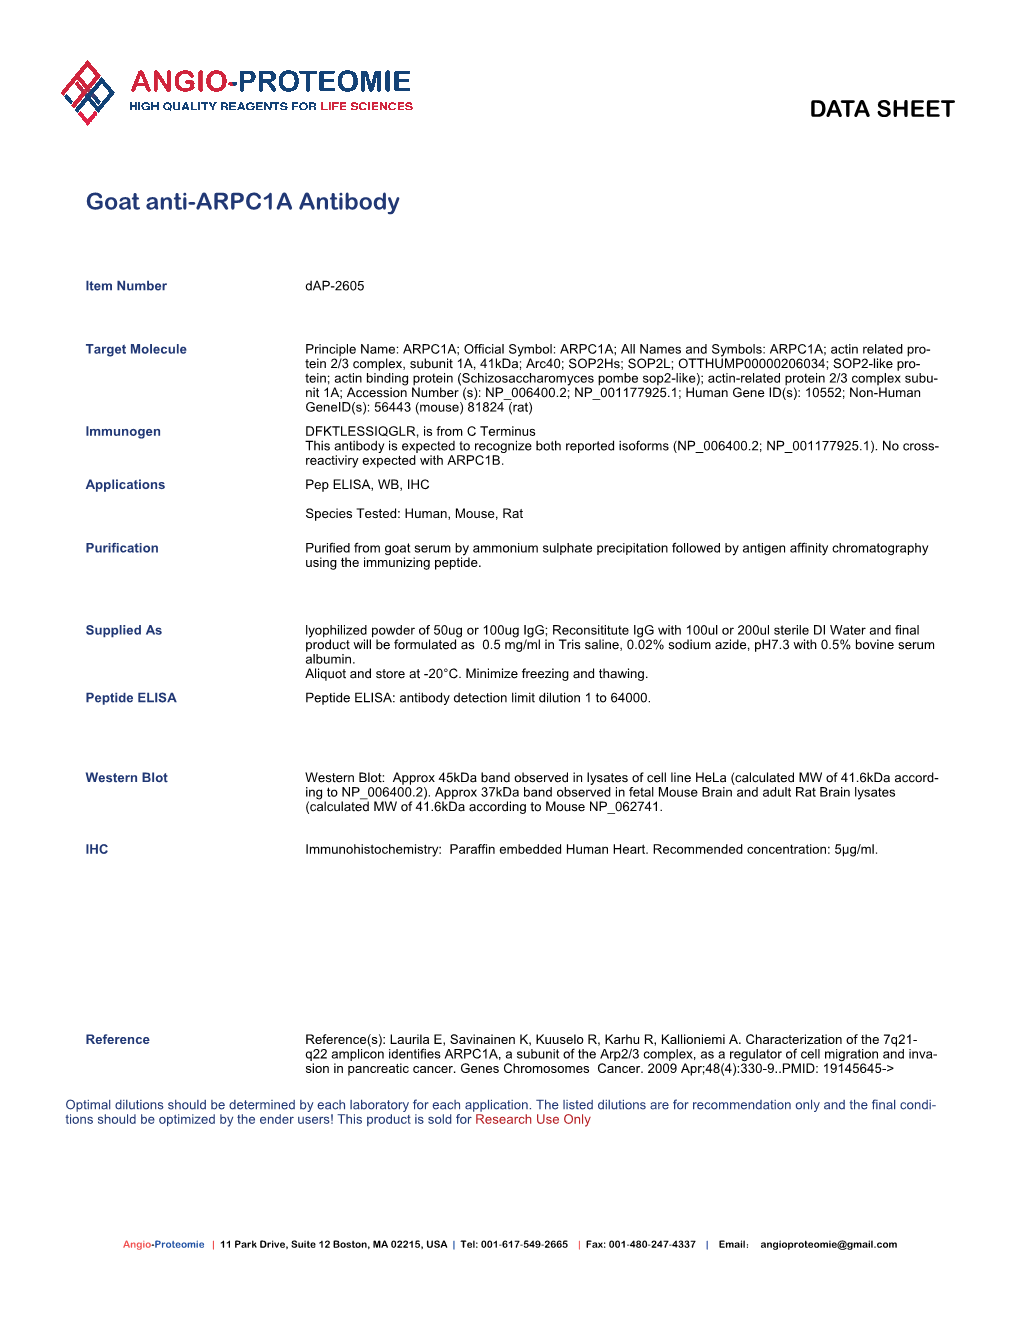 Dap-2605 Goat Anti-ARPC1A Antibody-PDF.Pdf